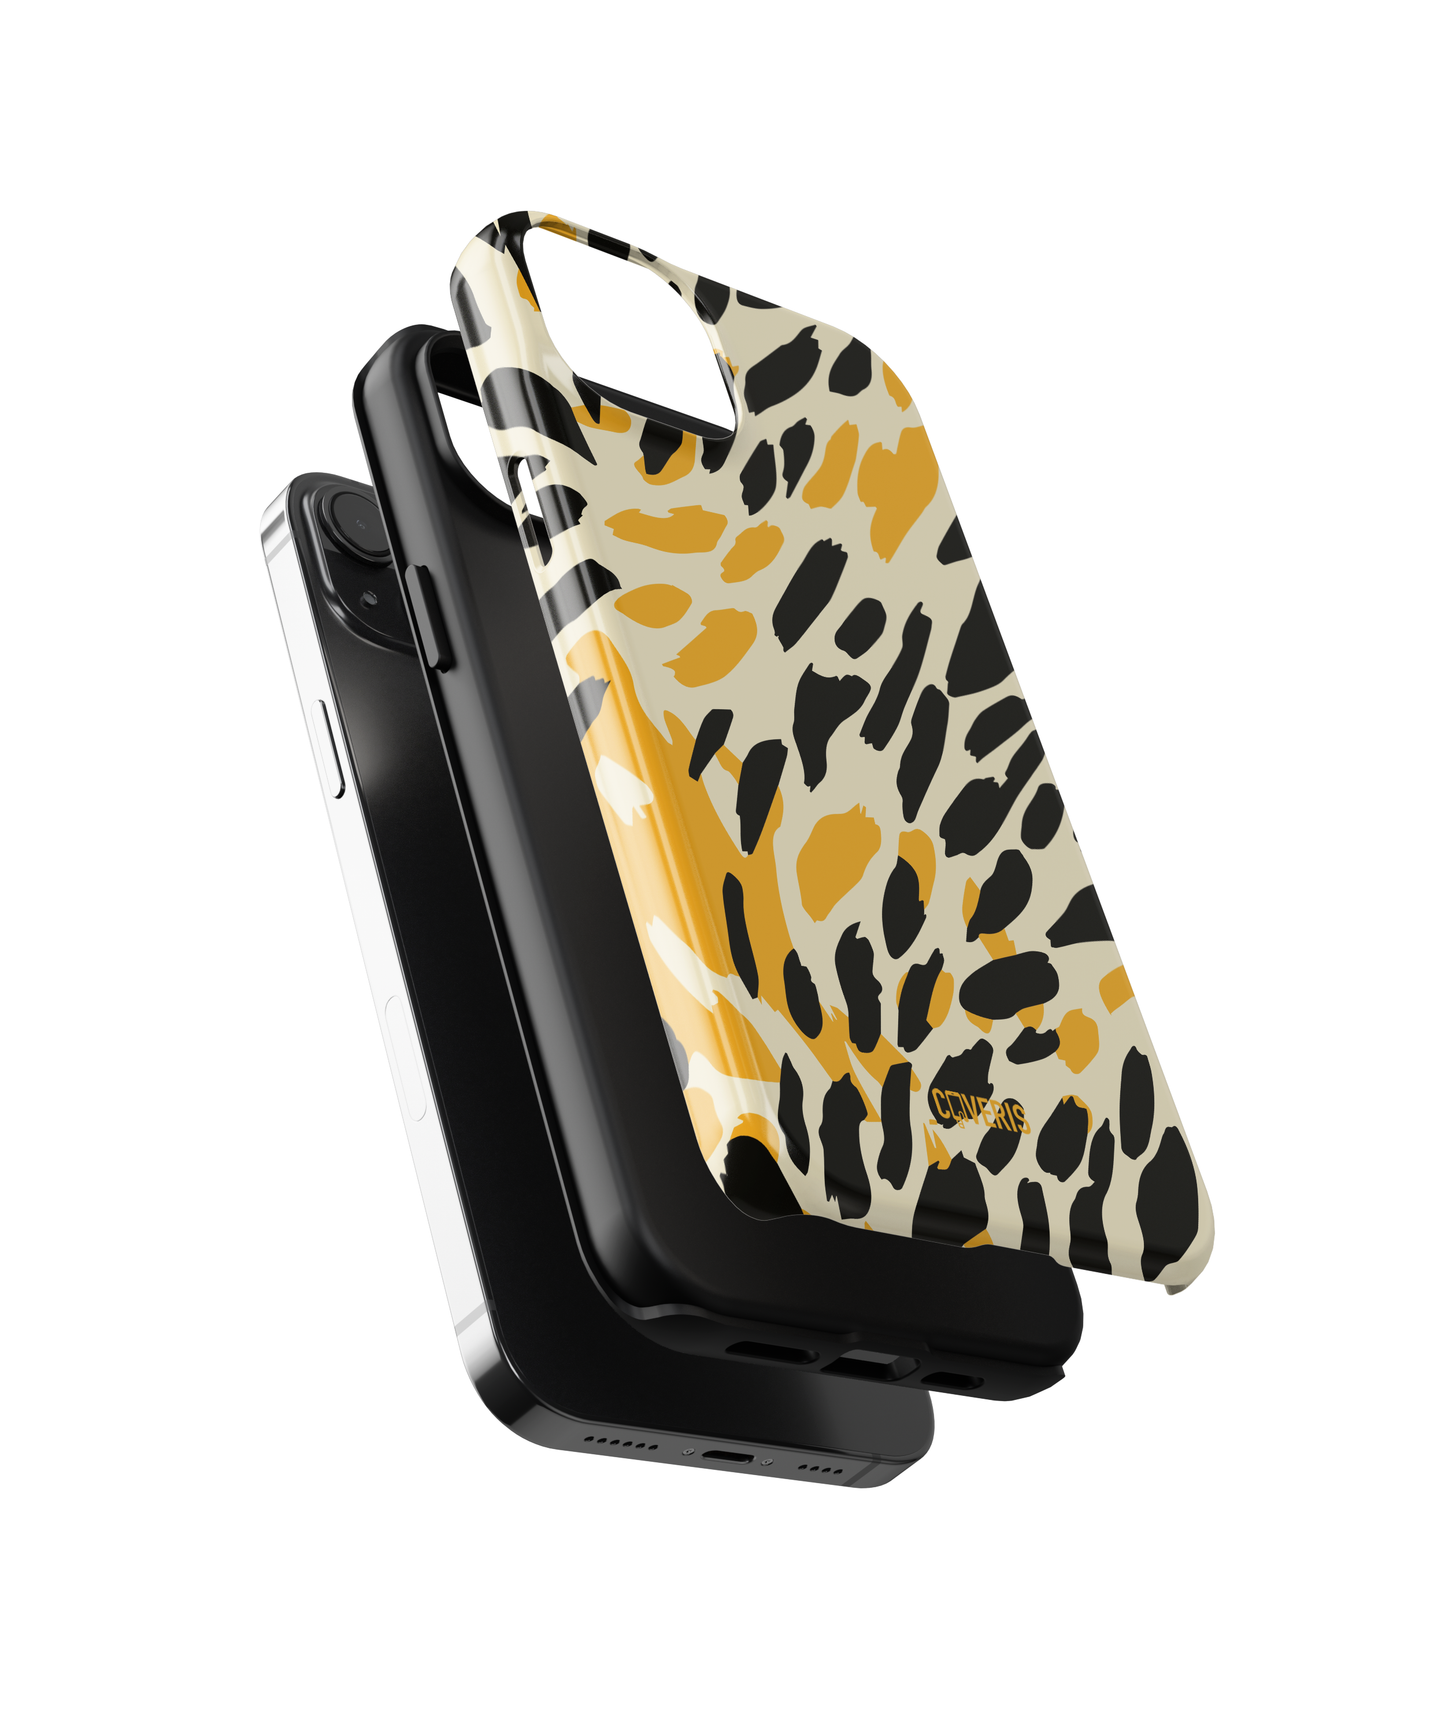 Cheetah - Samsung Galaxy A70 phone case